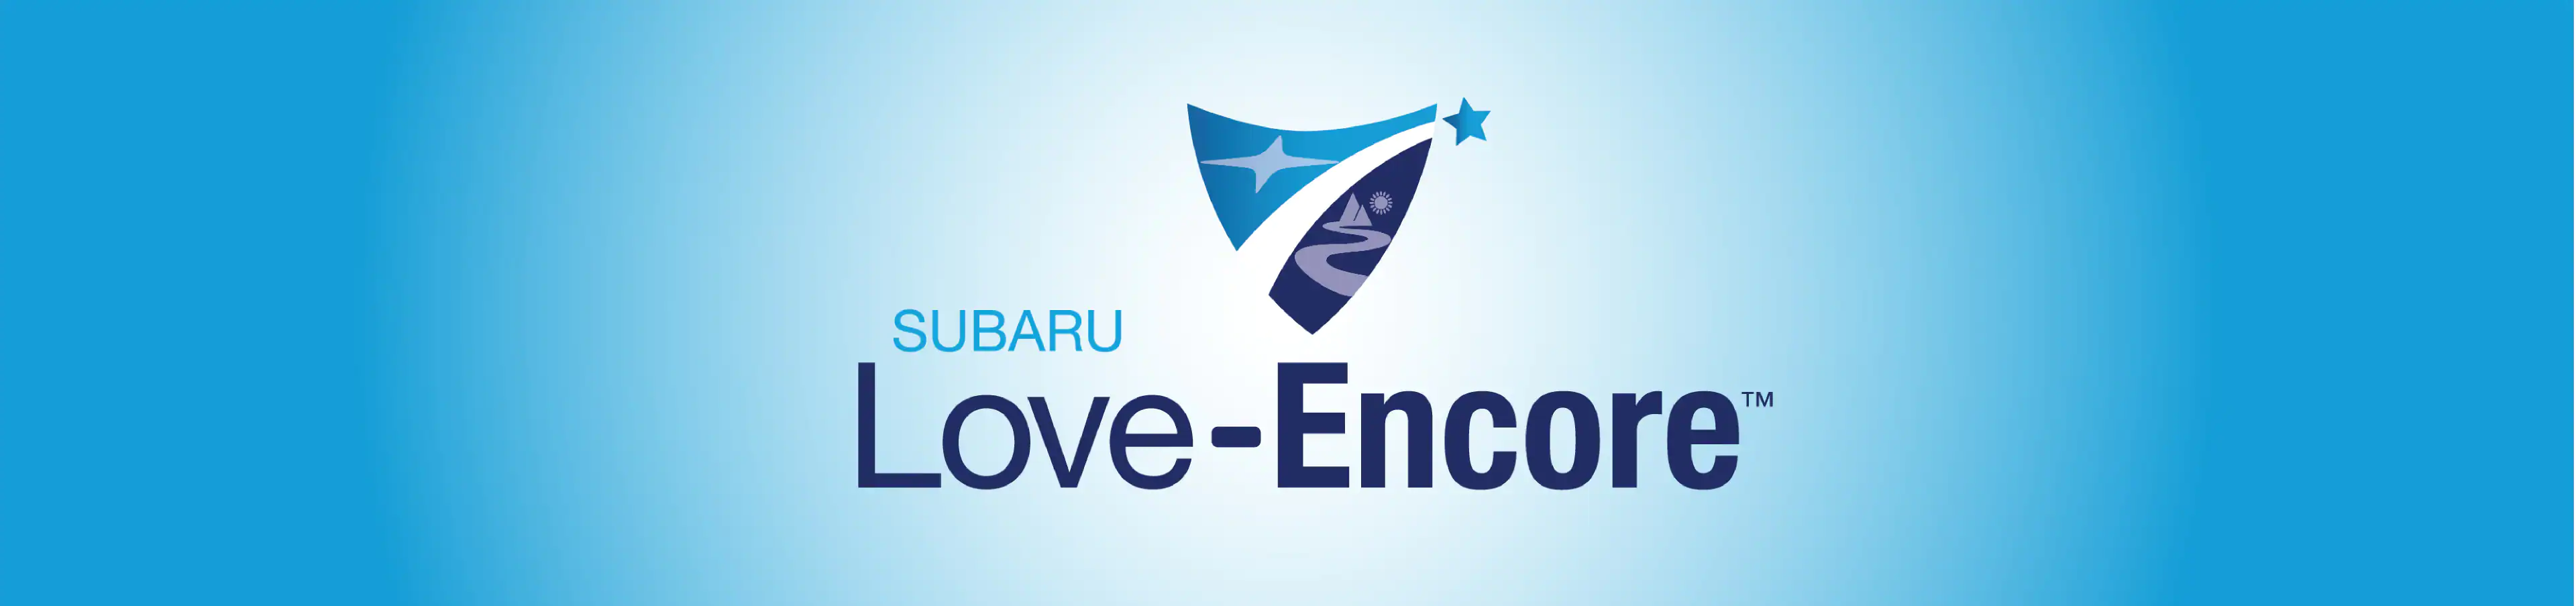 Subaru Love Encore Winner Subaru